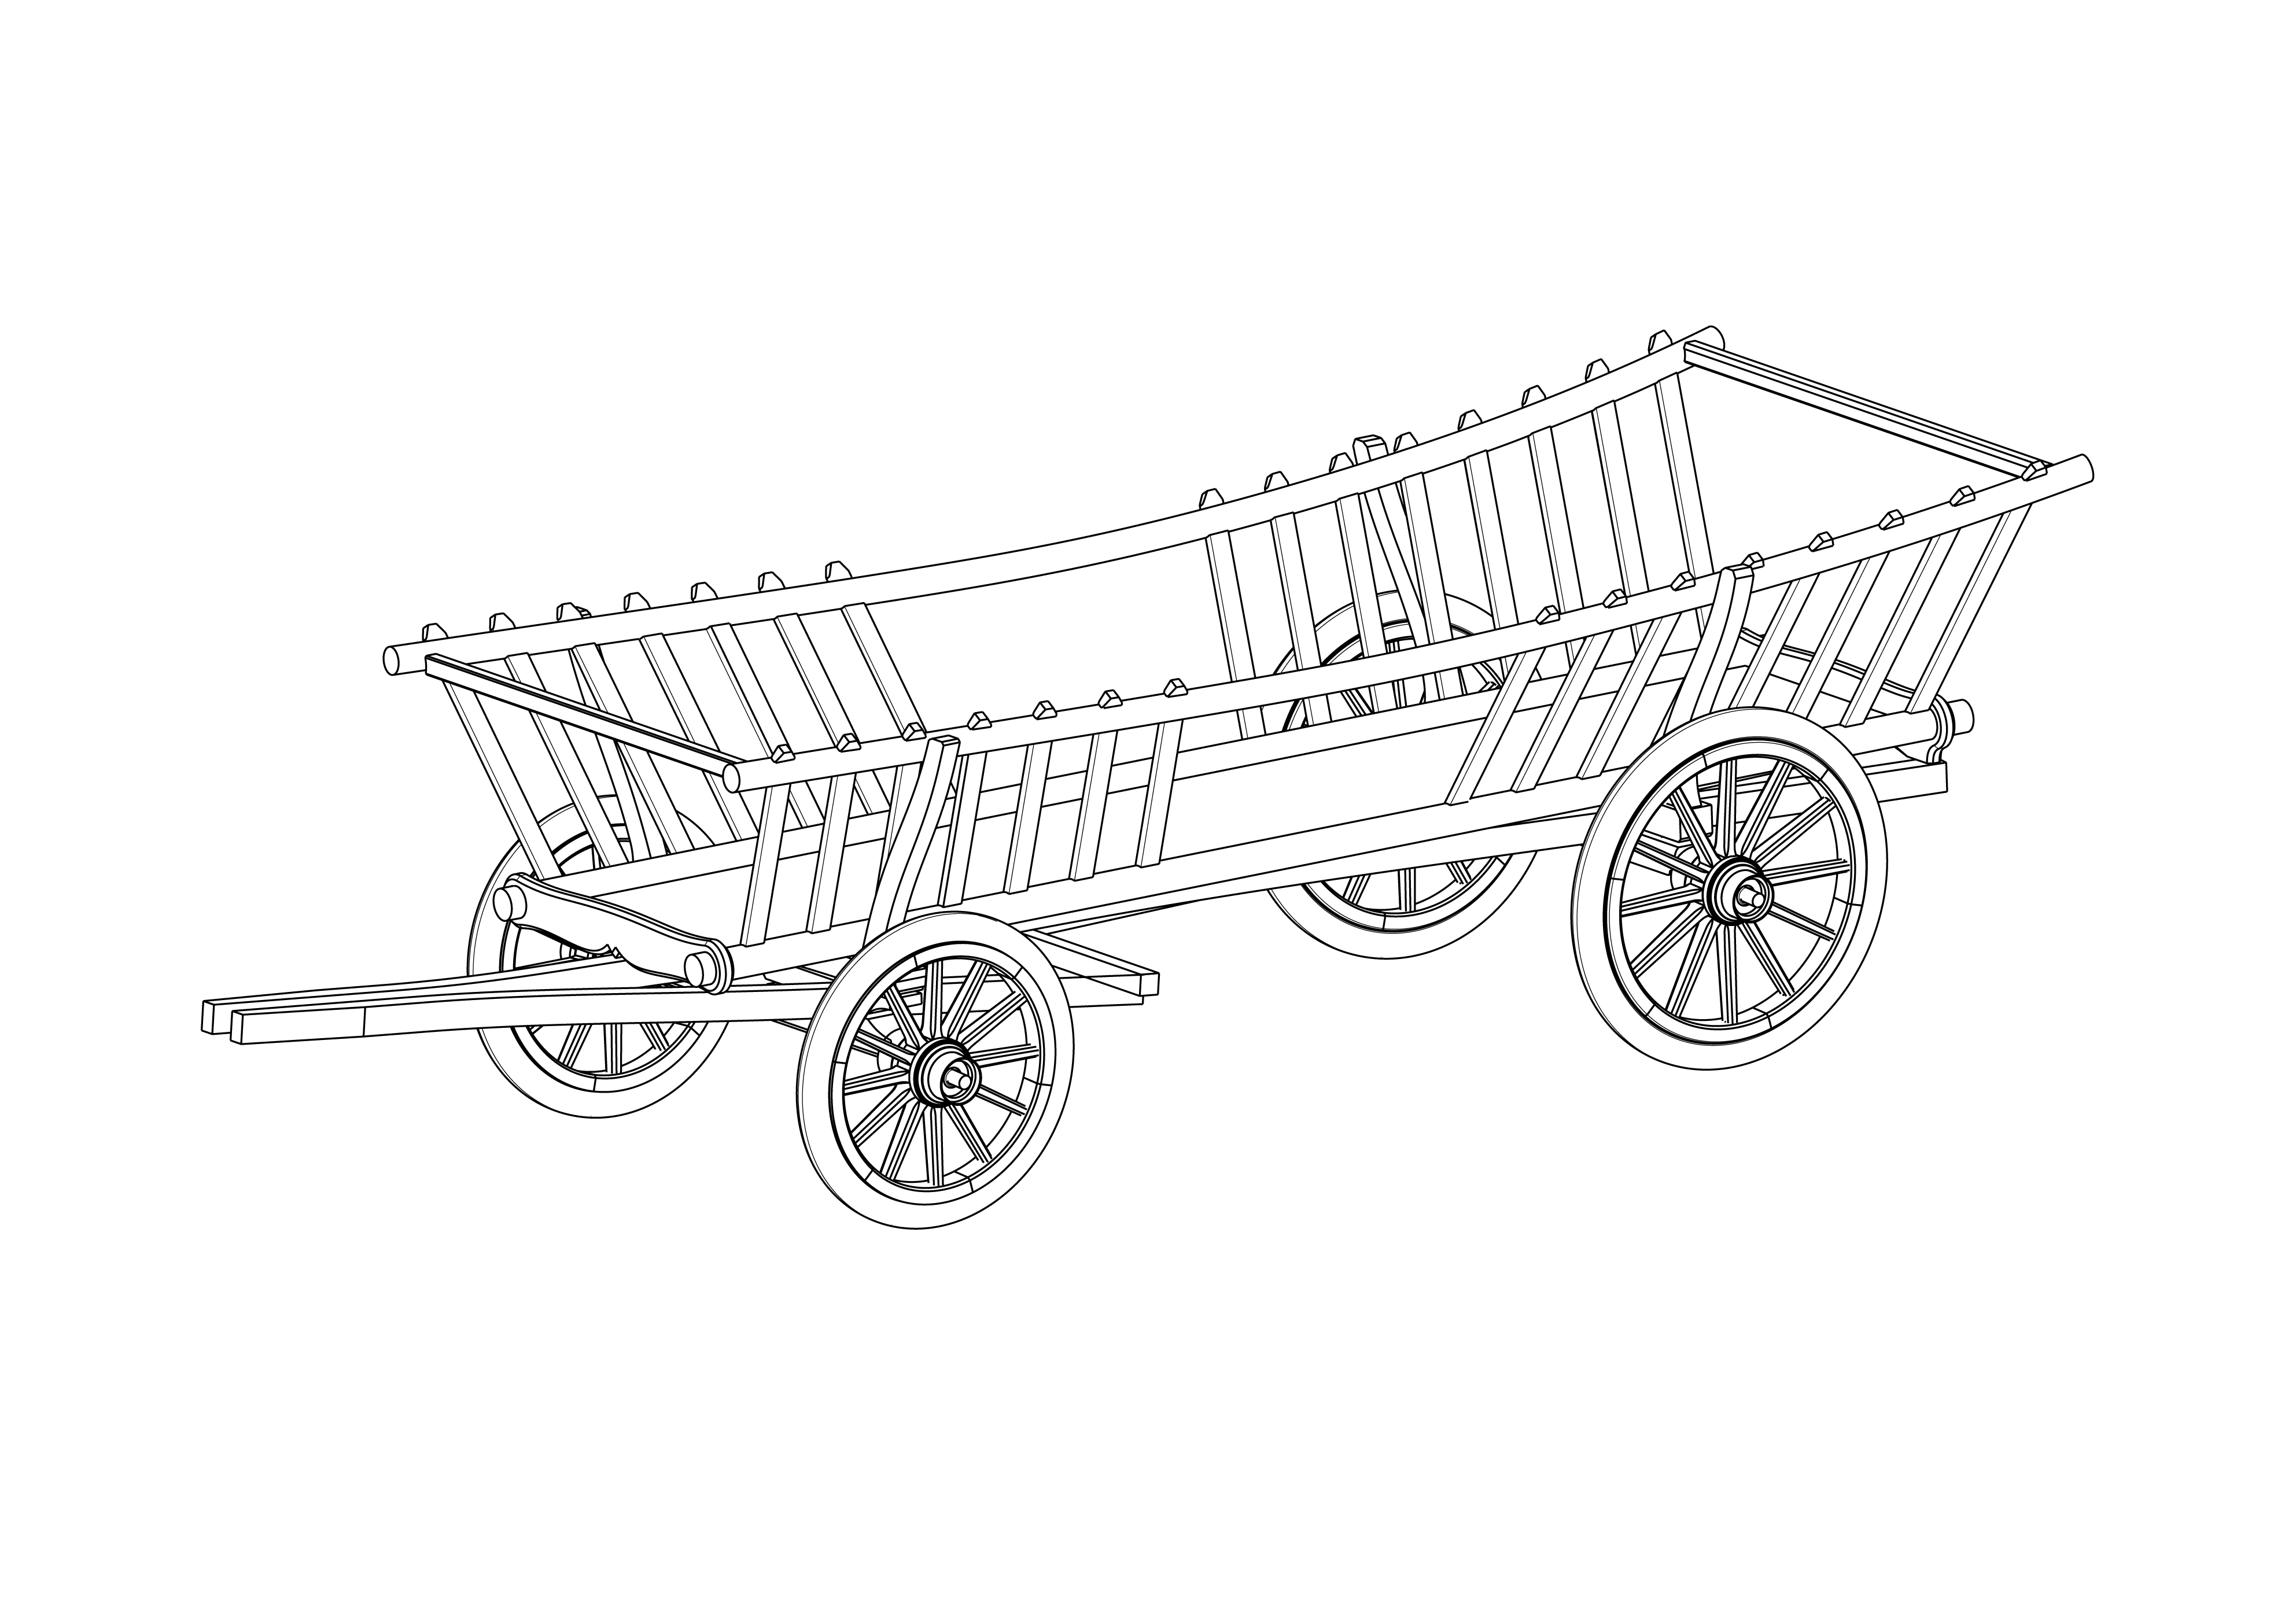 Abbildung: Maschinenbau-Student entwickelt Ponykutsche im viktorianischen Stil, Skizze des Ponyleiterwagens (Quelle: Till Kliche)